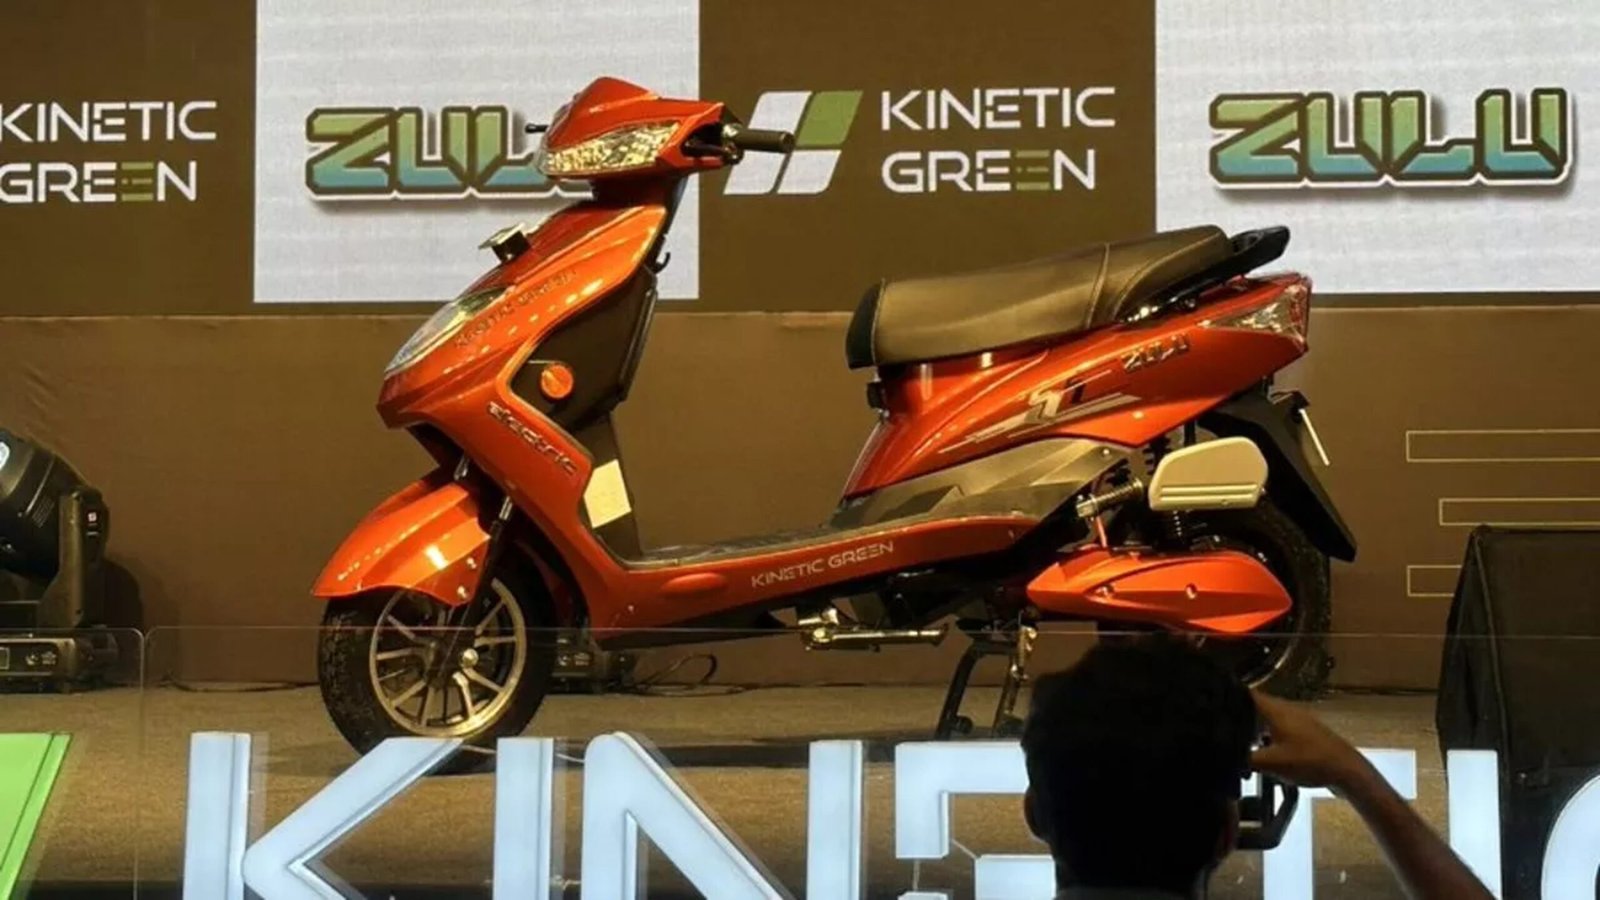 Kinetic Green ने लॉन्च किया Zulu इलेक्ट्रिक स्कूटर, कंपनी ने जारी की डिटेल्स,